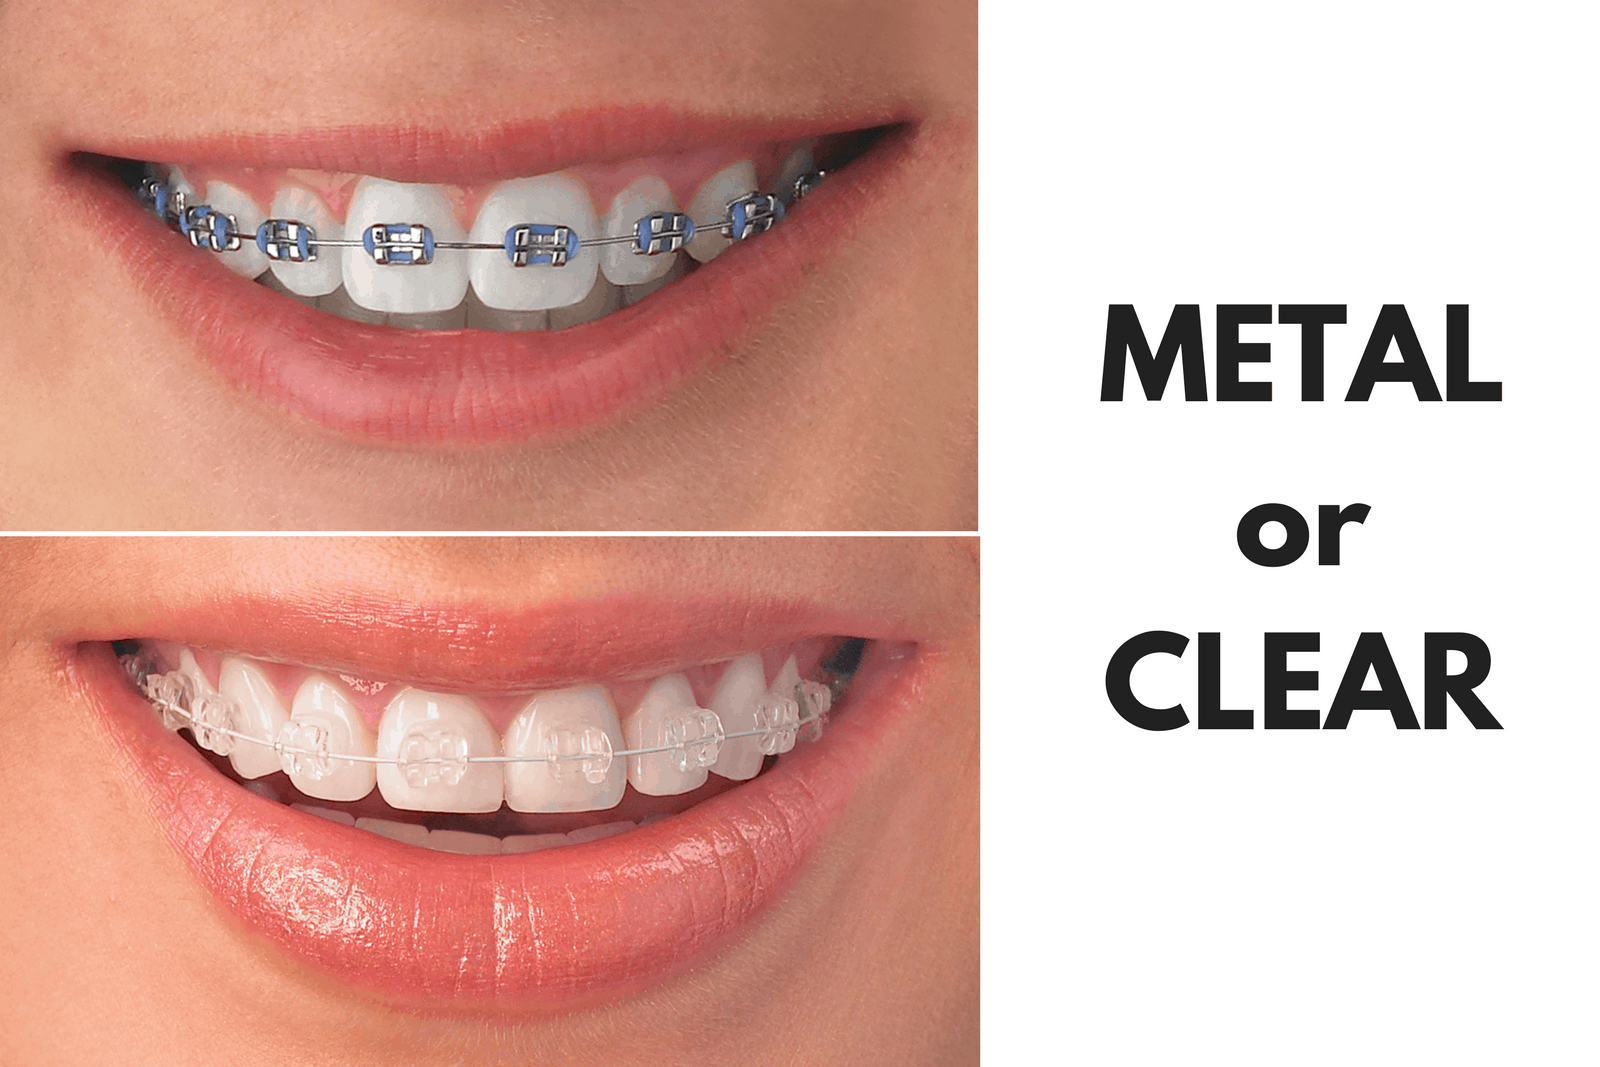 Ask Your Northglenn Dentist: Should I Get Metal or Clear Braces?